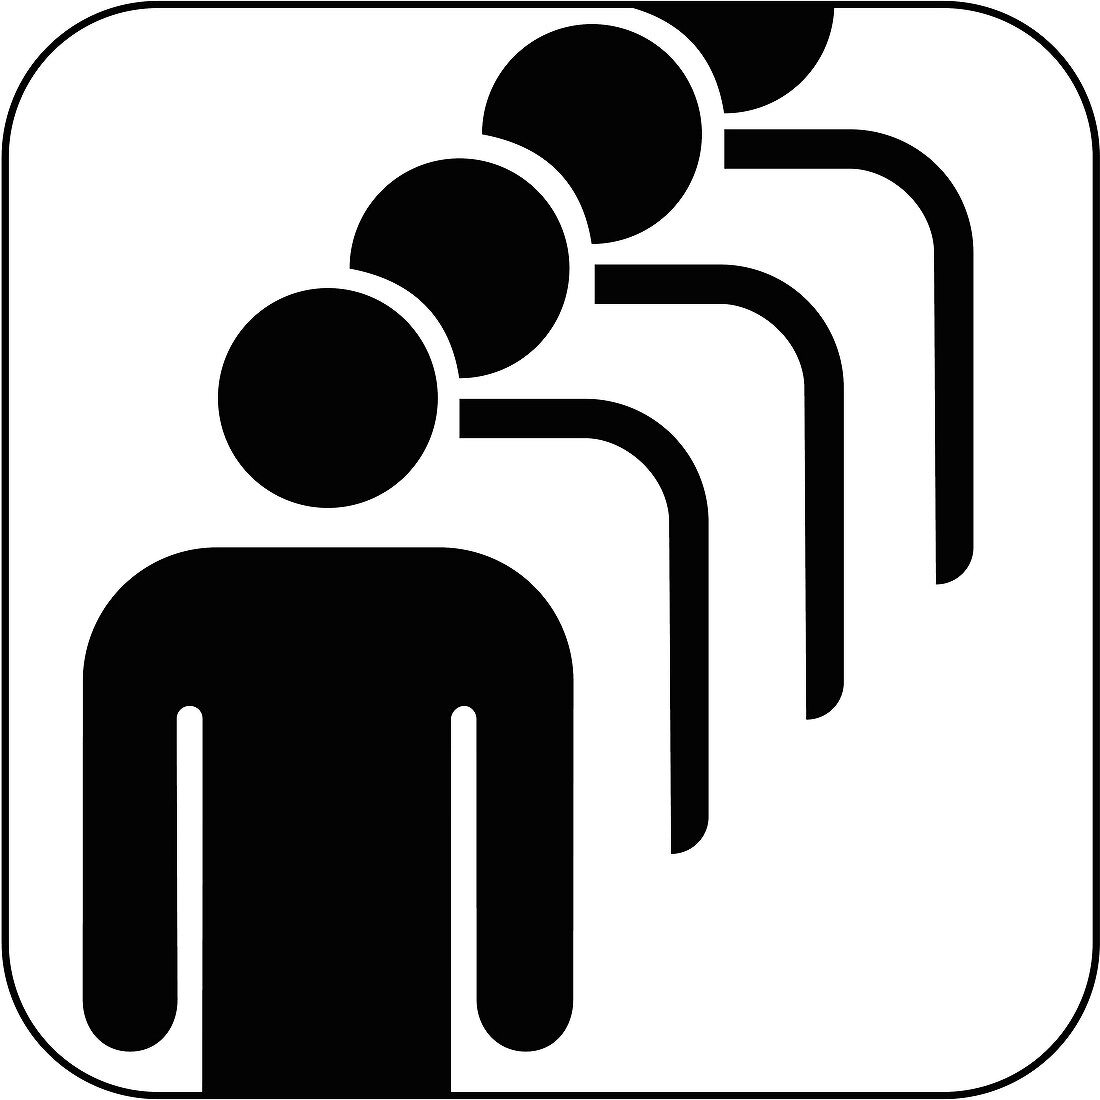 Male queue symbol,artwork